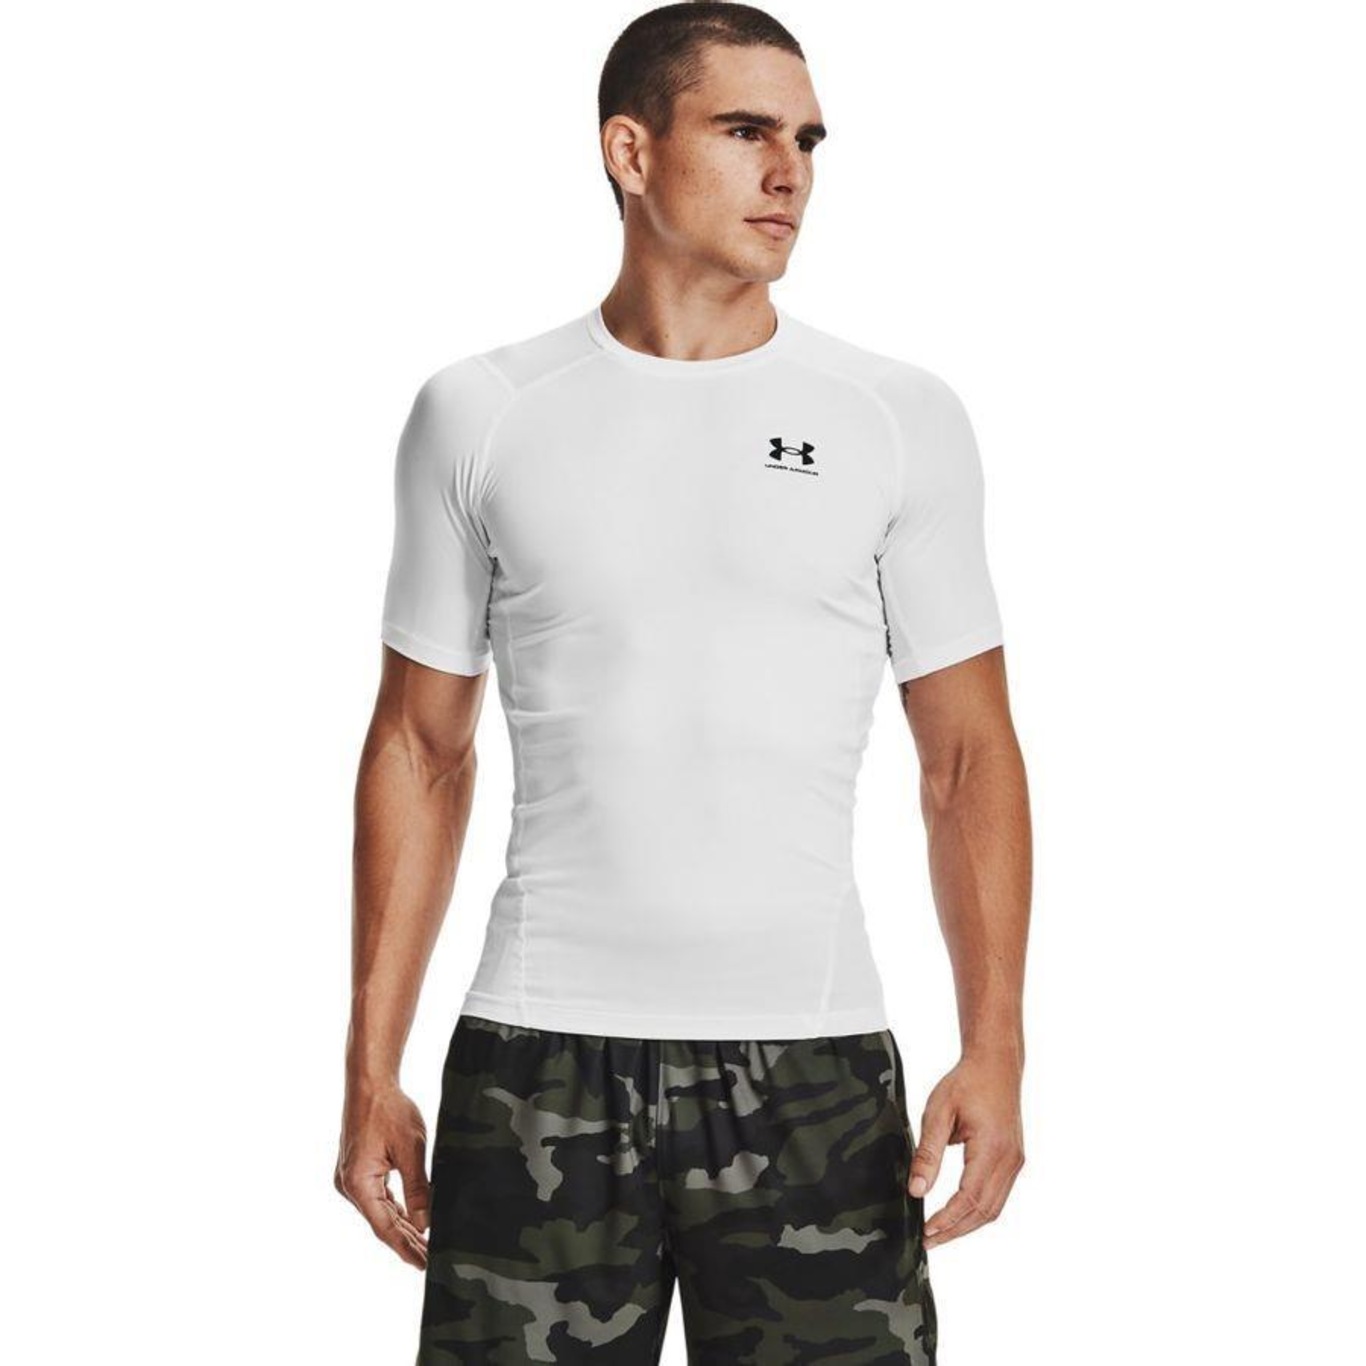 Camiseta de Compressão Under Armour HG Comp - Masculina